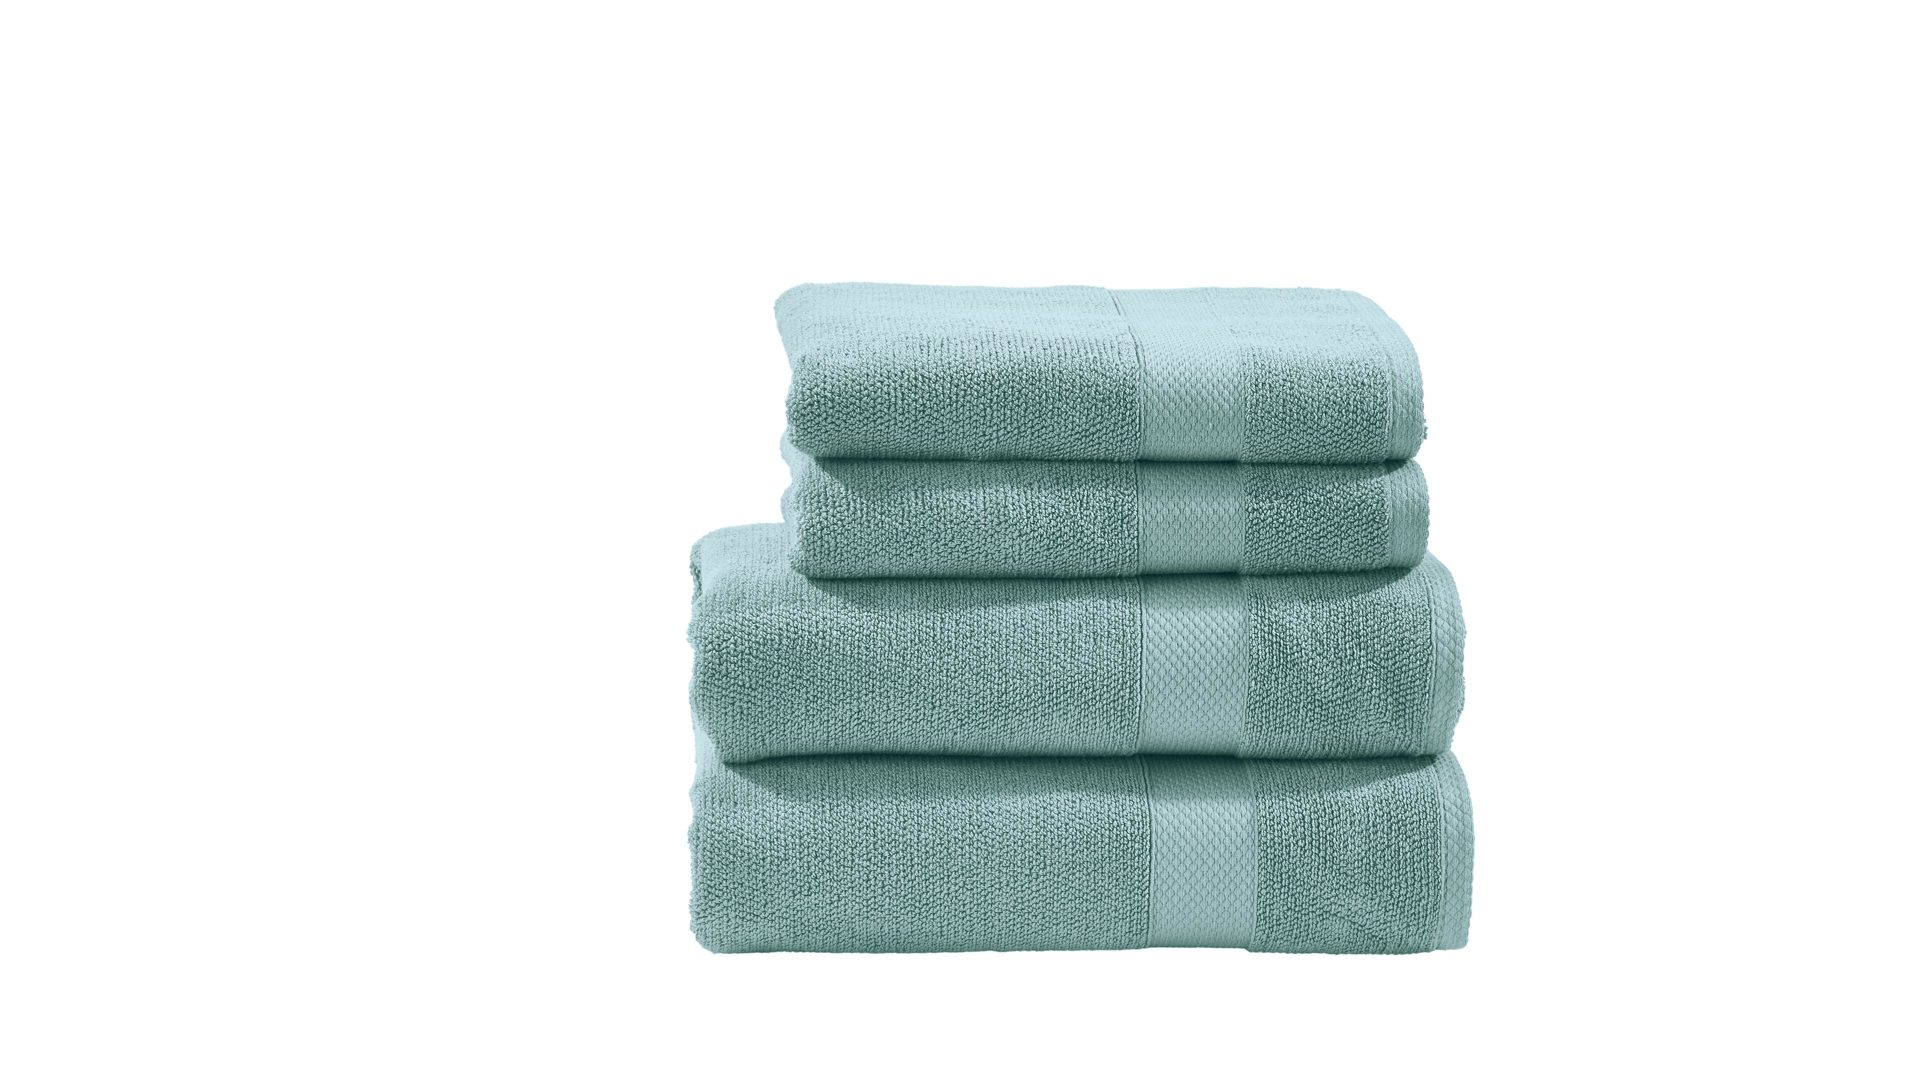 Handtuch-Set Done.® be different aus Stoff in Grün DONE.® Handtuch-Set Deluxe oceanfarbene Baumwolle – vierteilig